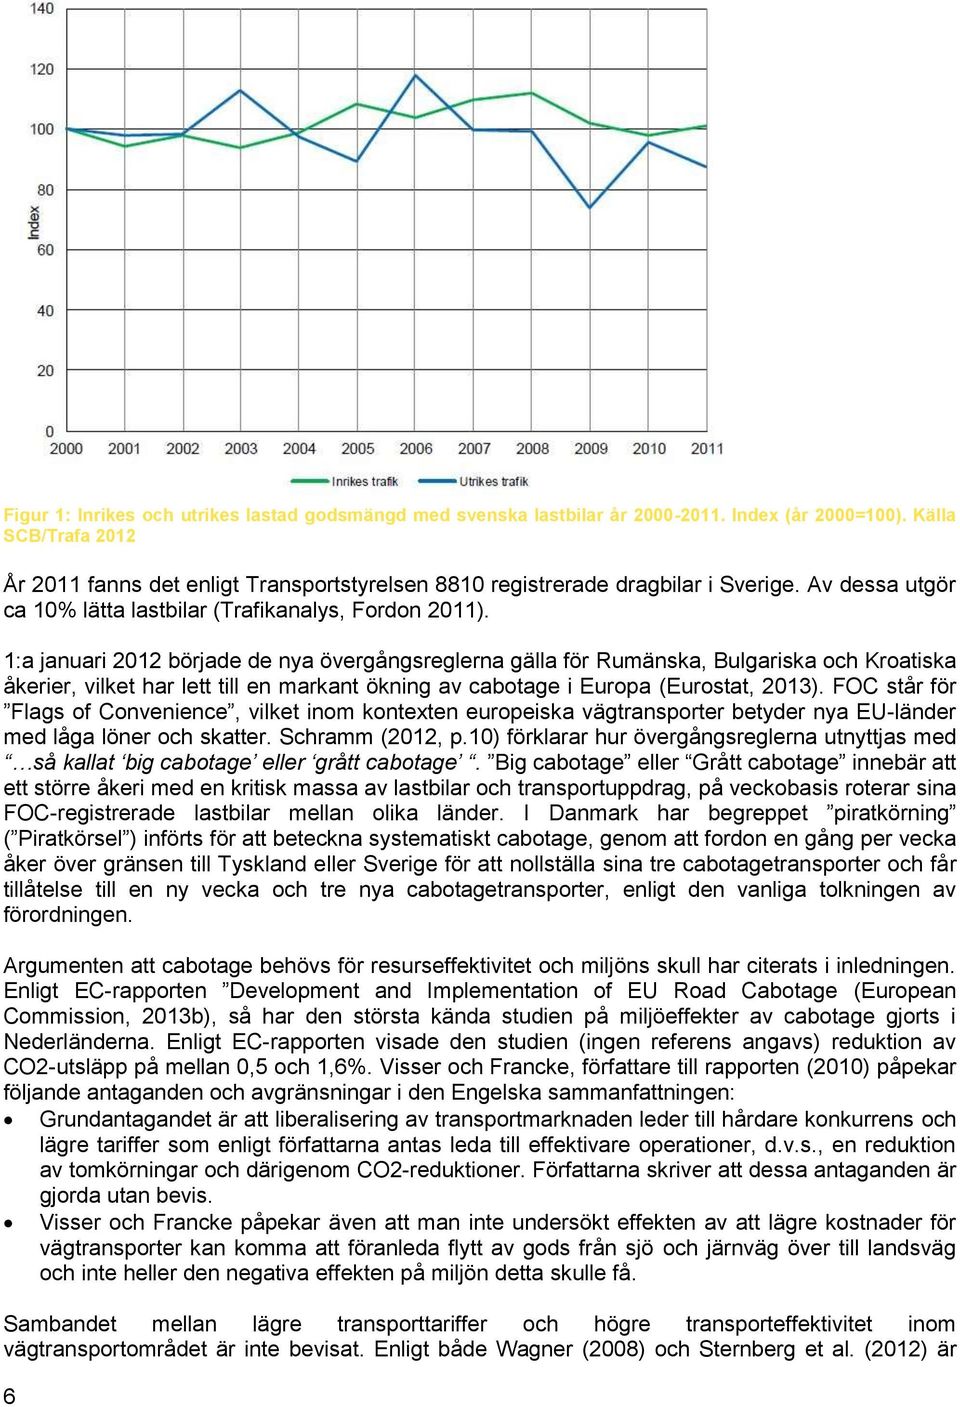 1:a januari 2012 började de nya övergångsreglerna gälla för Rumänska, Bulgariska och Kroatiska åkerier, vilket har lett till en markant ökning av cabotage i Europa (Eurostat, 2013).